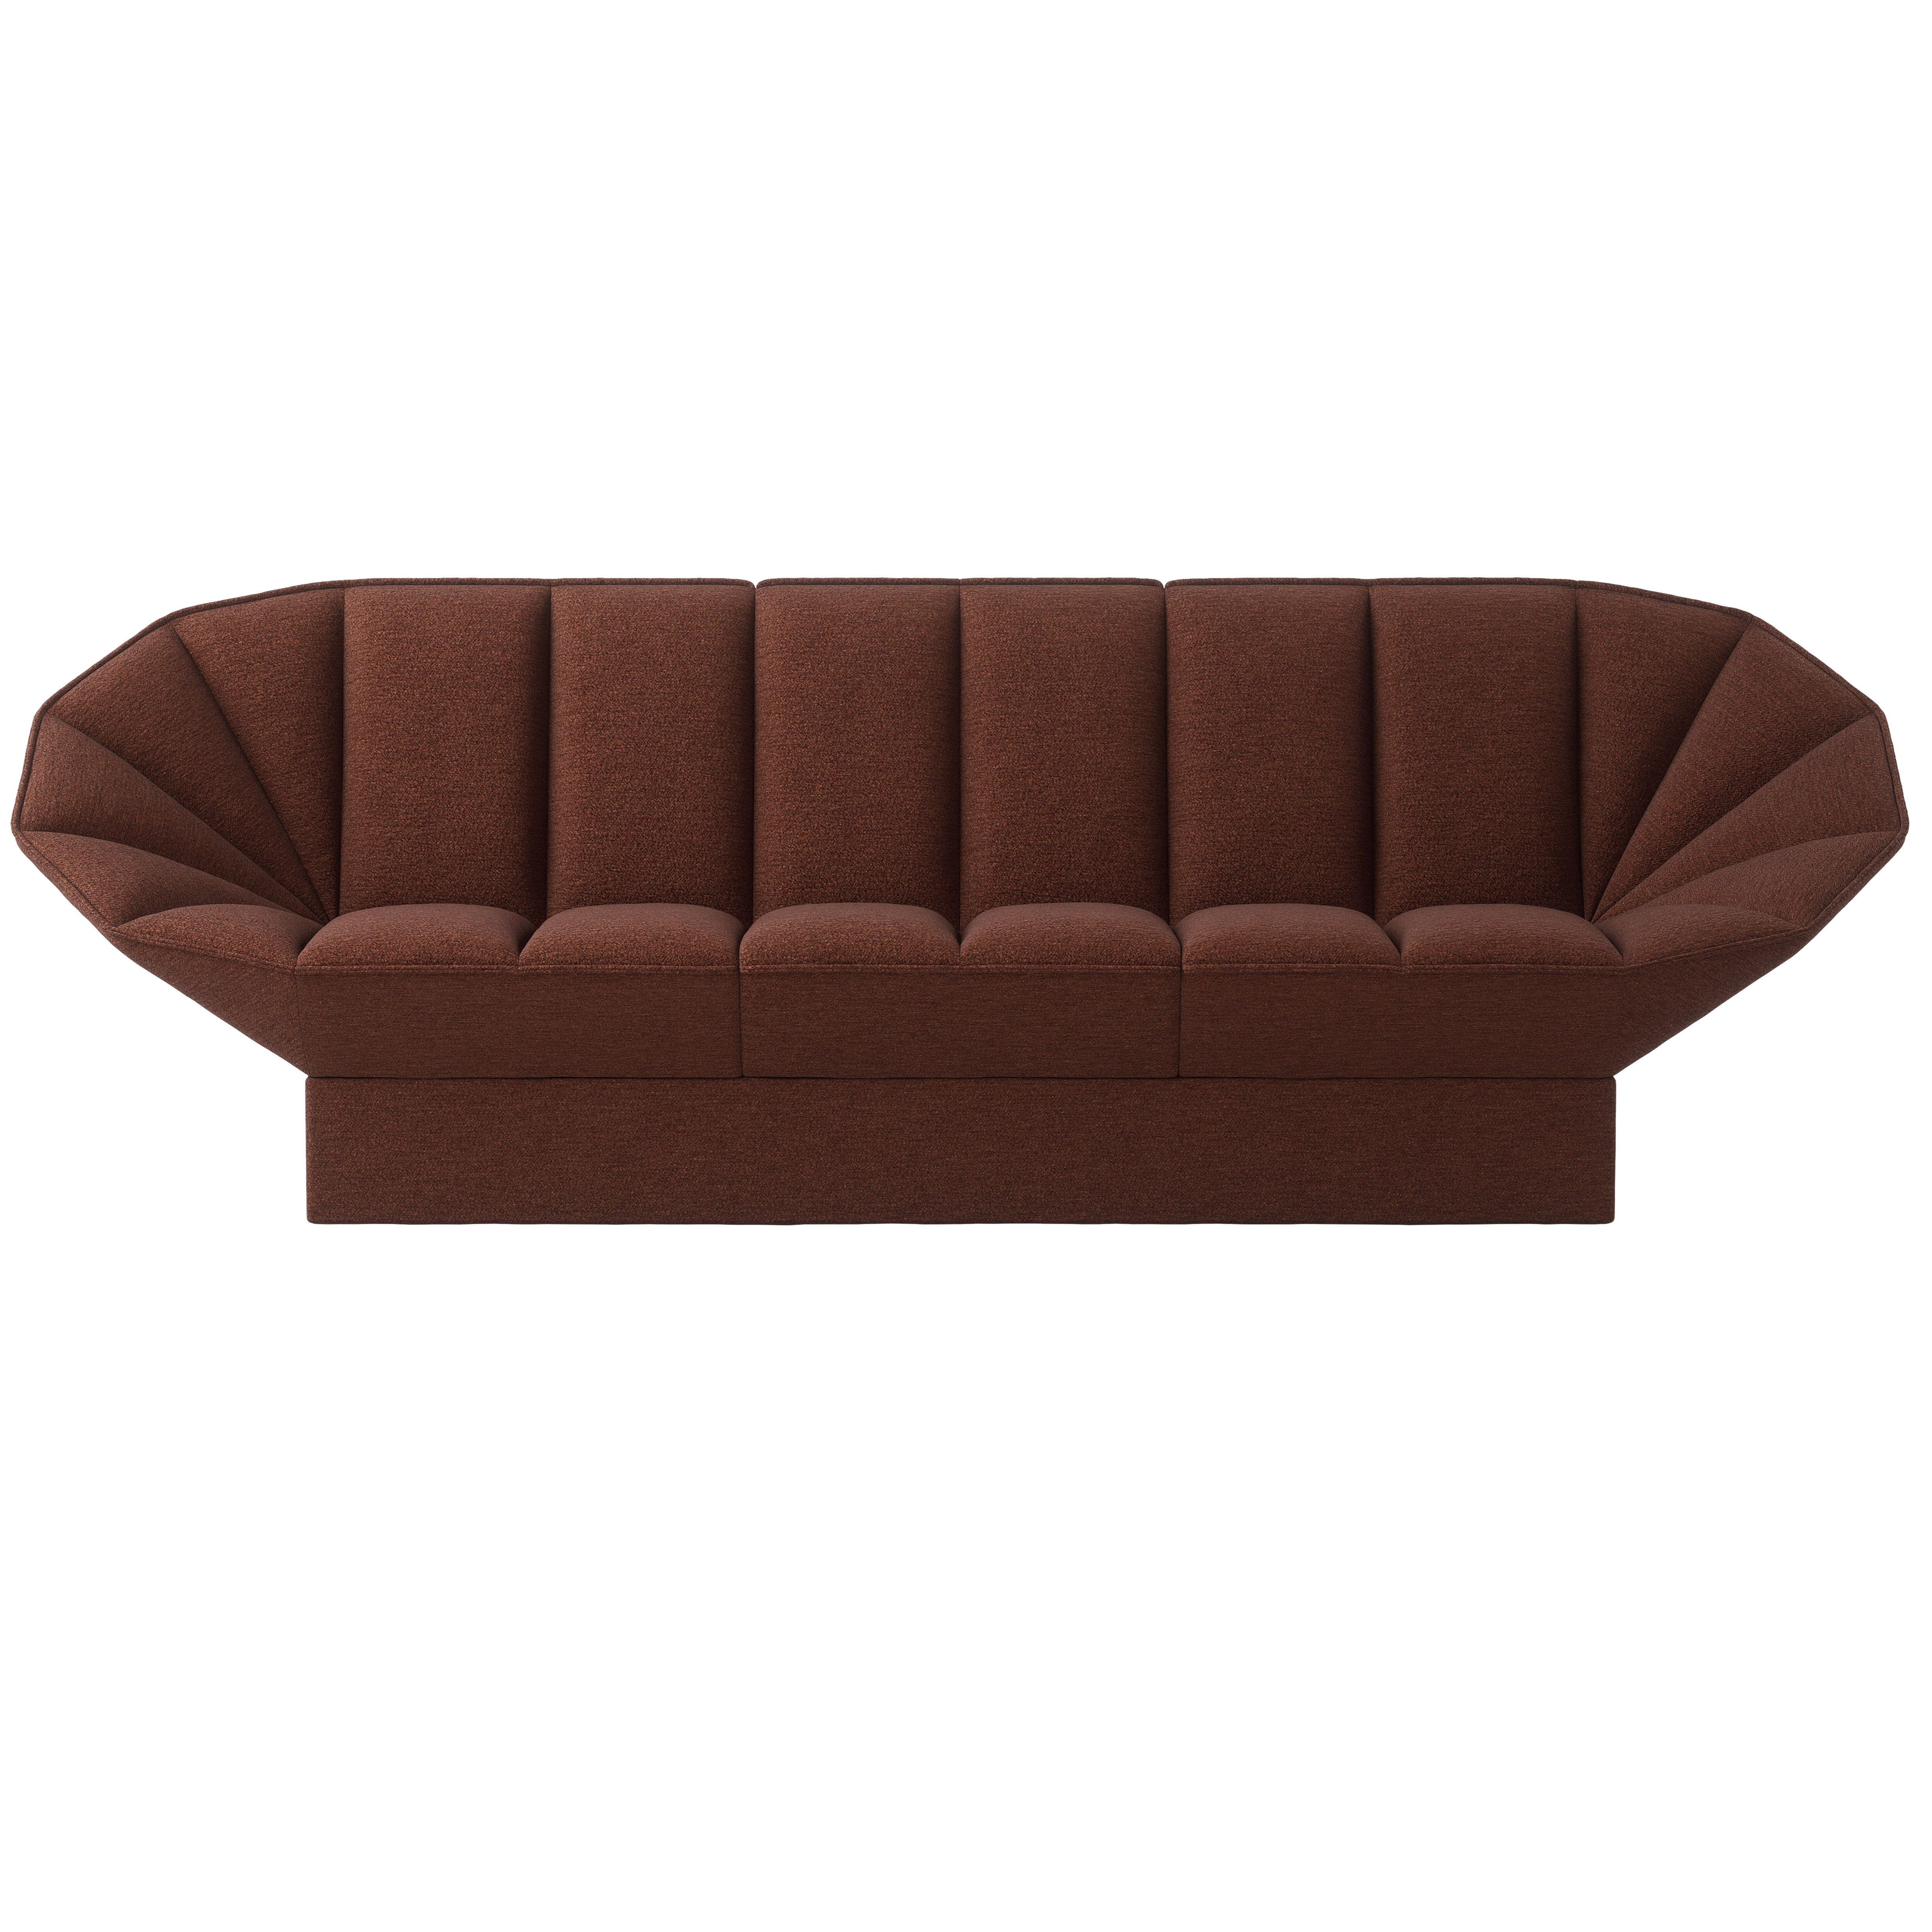 Ori 3- seater sofa product image 9